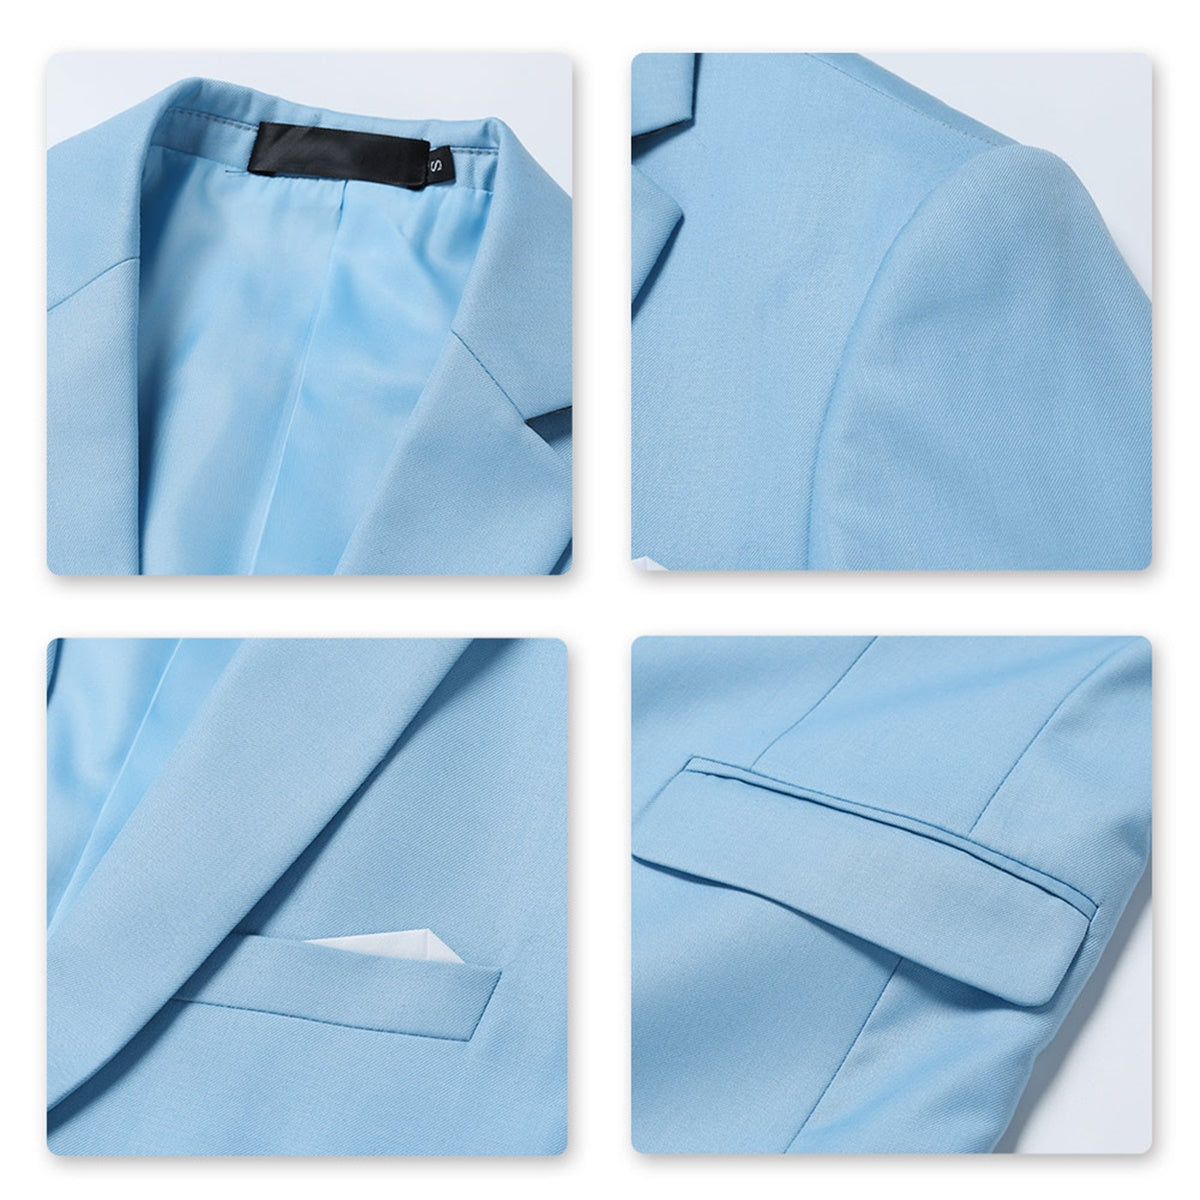 Light Blue 2-Piece Suit Slim Fit Two Button Suit